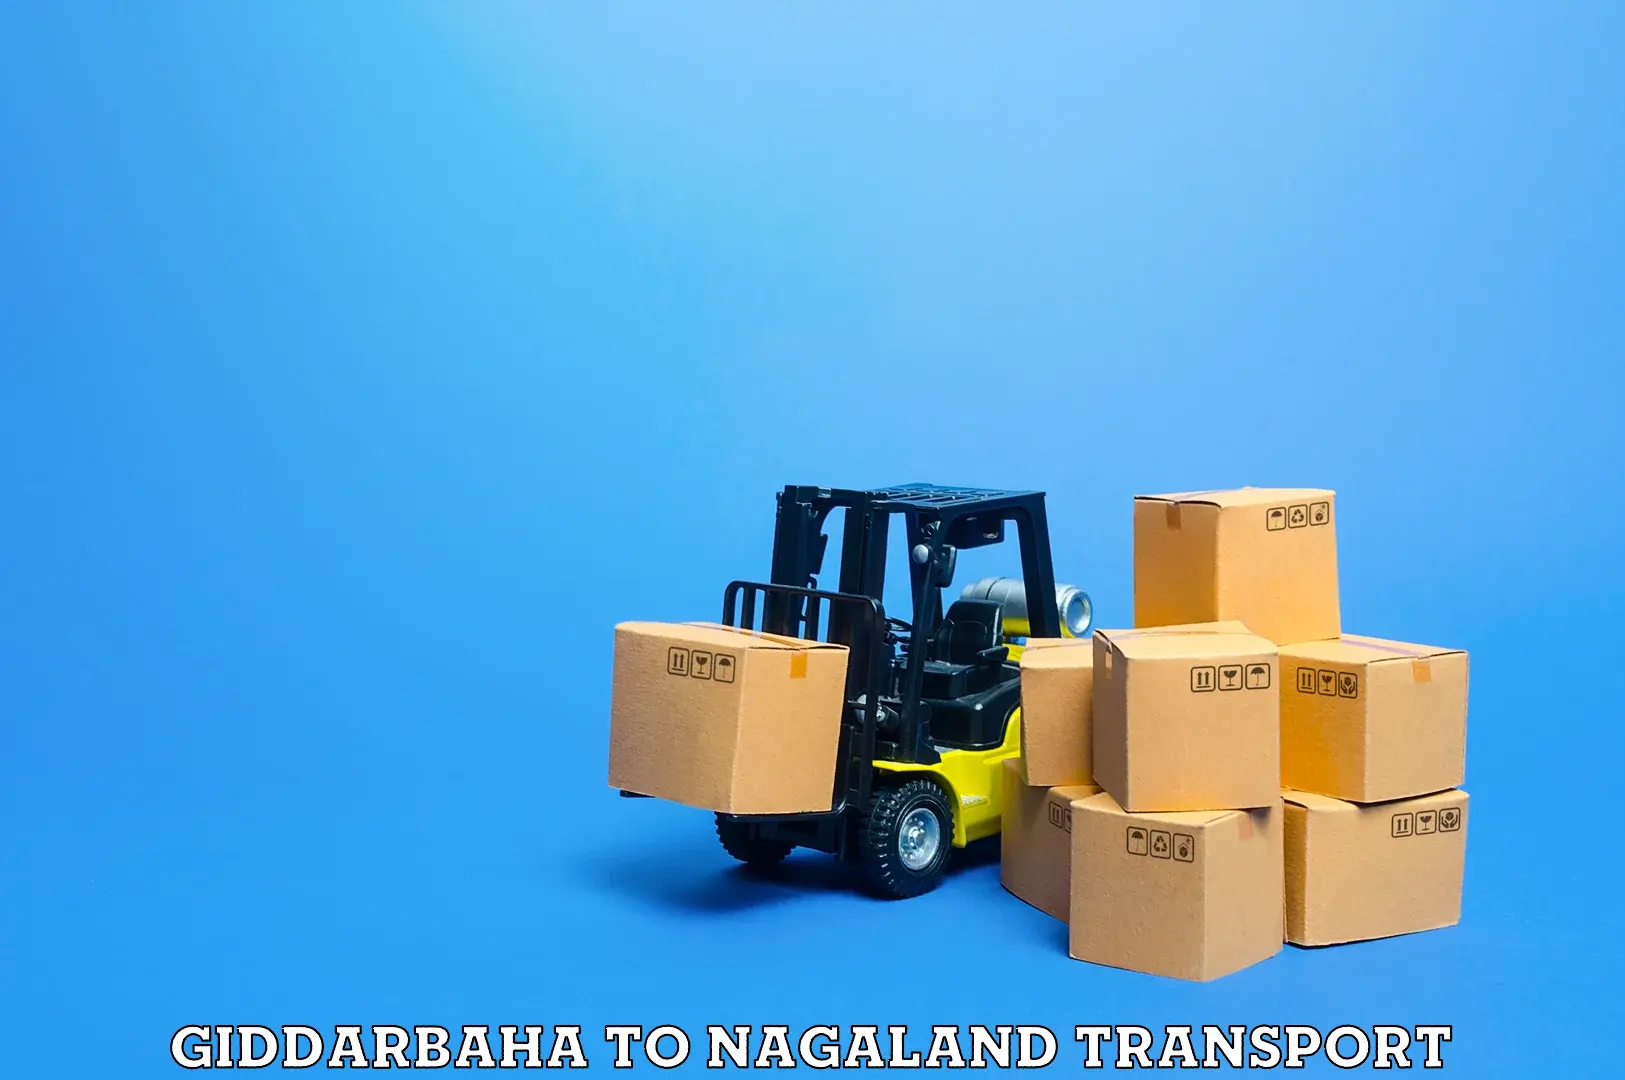 Shipping partner Giddarbaha to NIT Nagaland